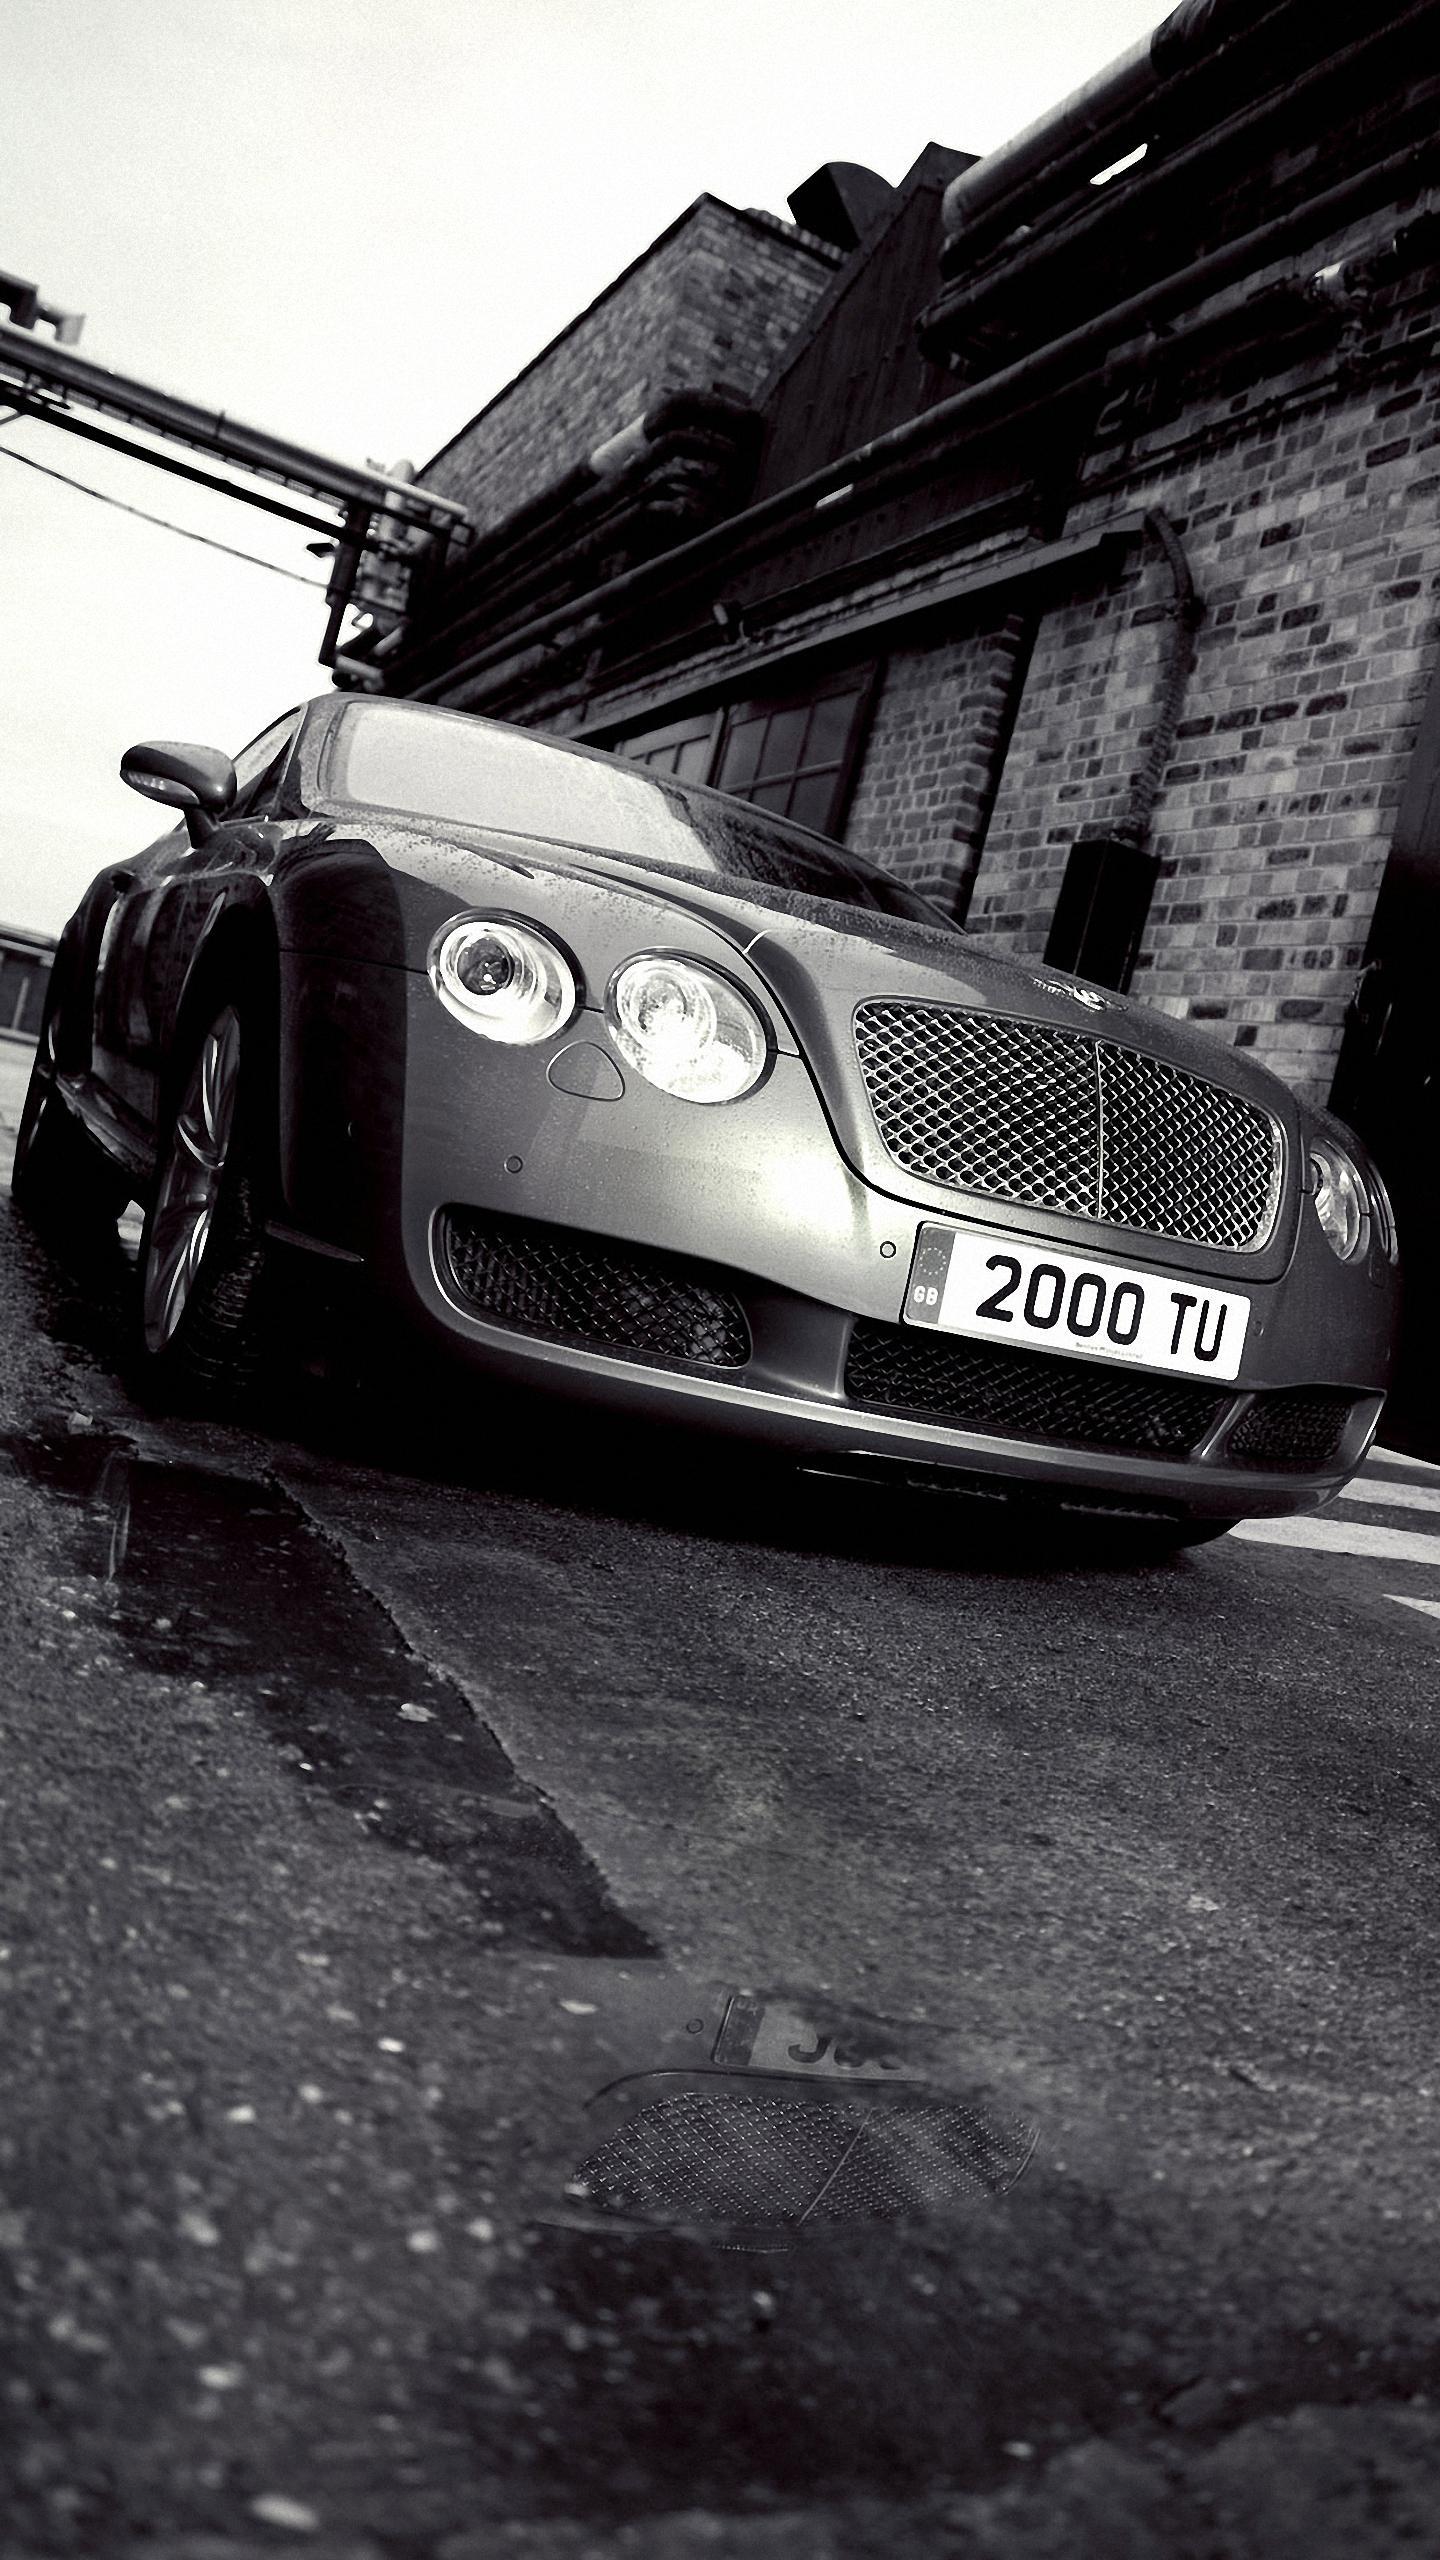 Black Bentley Car iPhone 6 Wallpaper HD 720 X 1280 Bentley